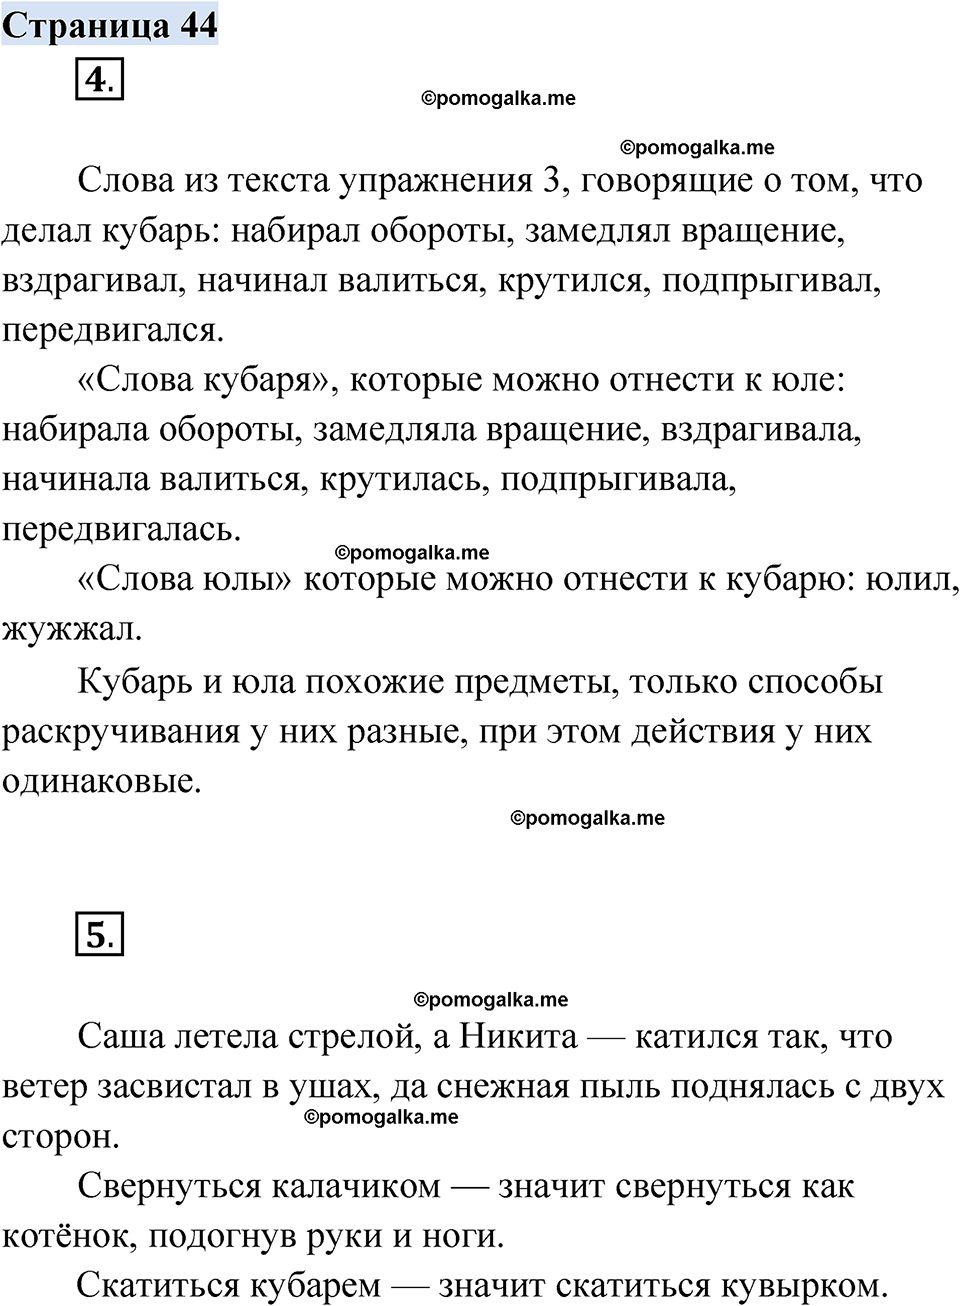 страница 44 русский родной язык 2 класс Александрова 2023 год